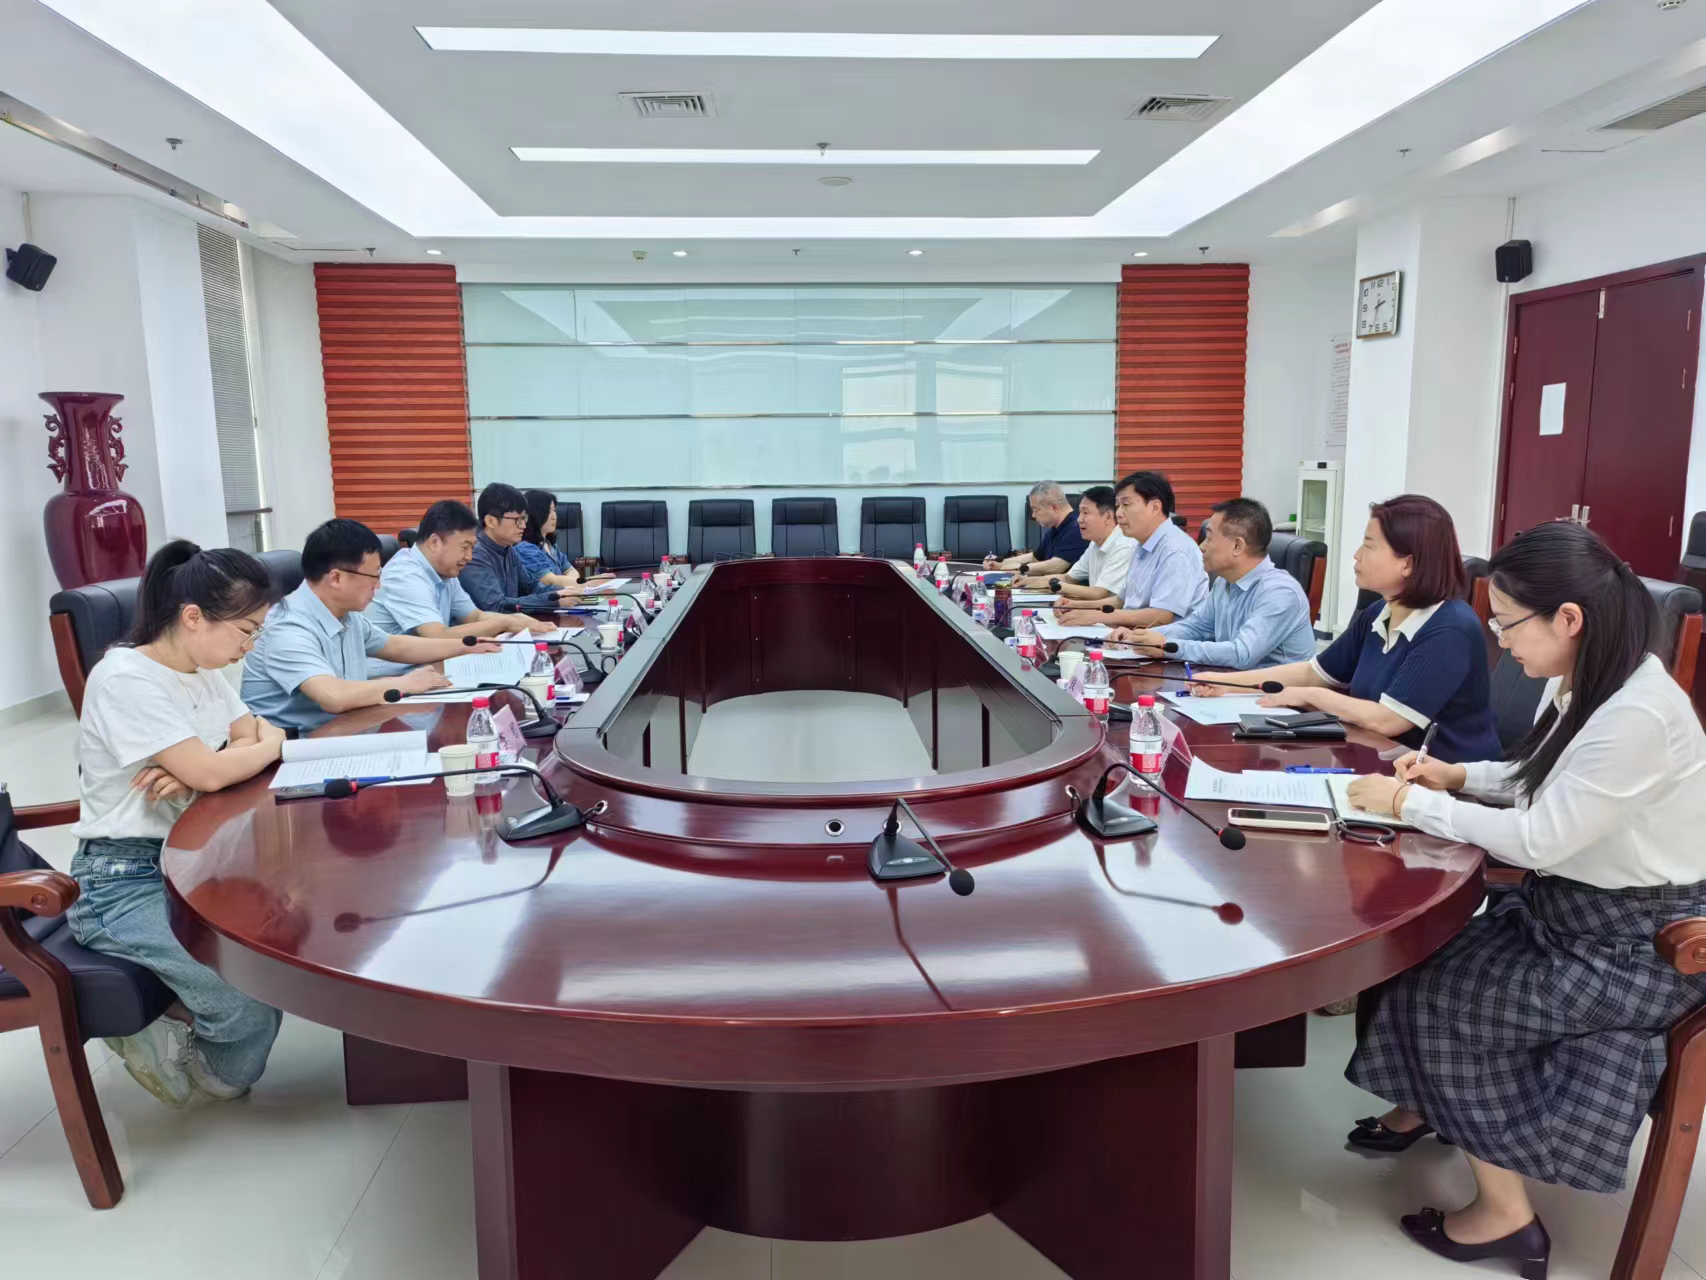 中國殘疾人輔助器具中心對河南省殘疾人康復服務中心輔具業務規范化建設 進行評估和調研